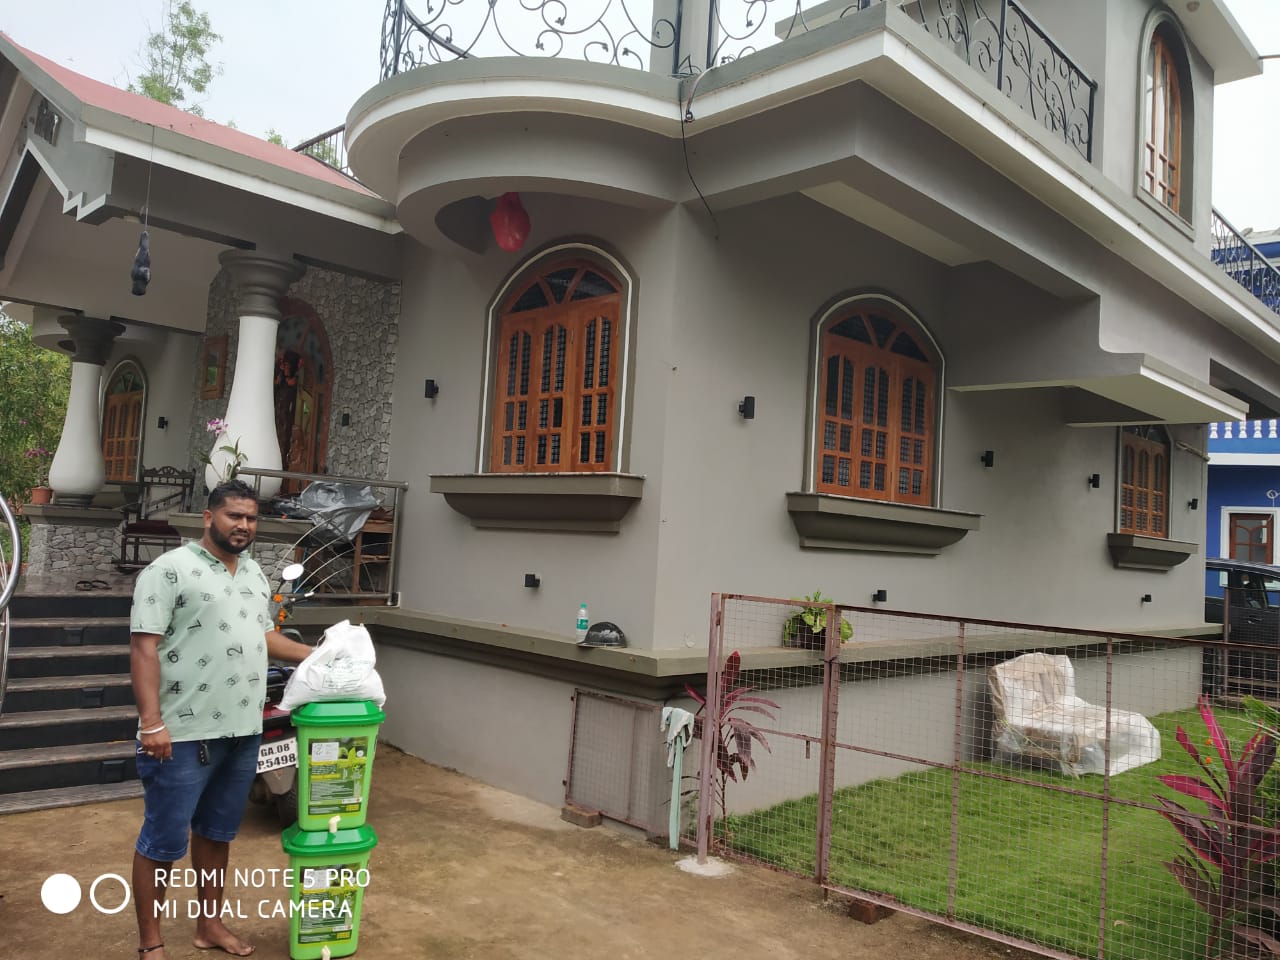 My Green Bin 25Ltr Home Composter Installed @ Betalbatim, Goa.